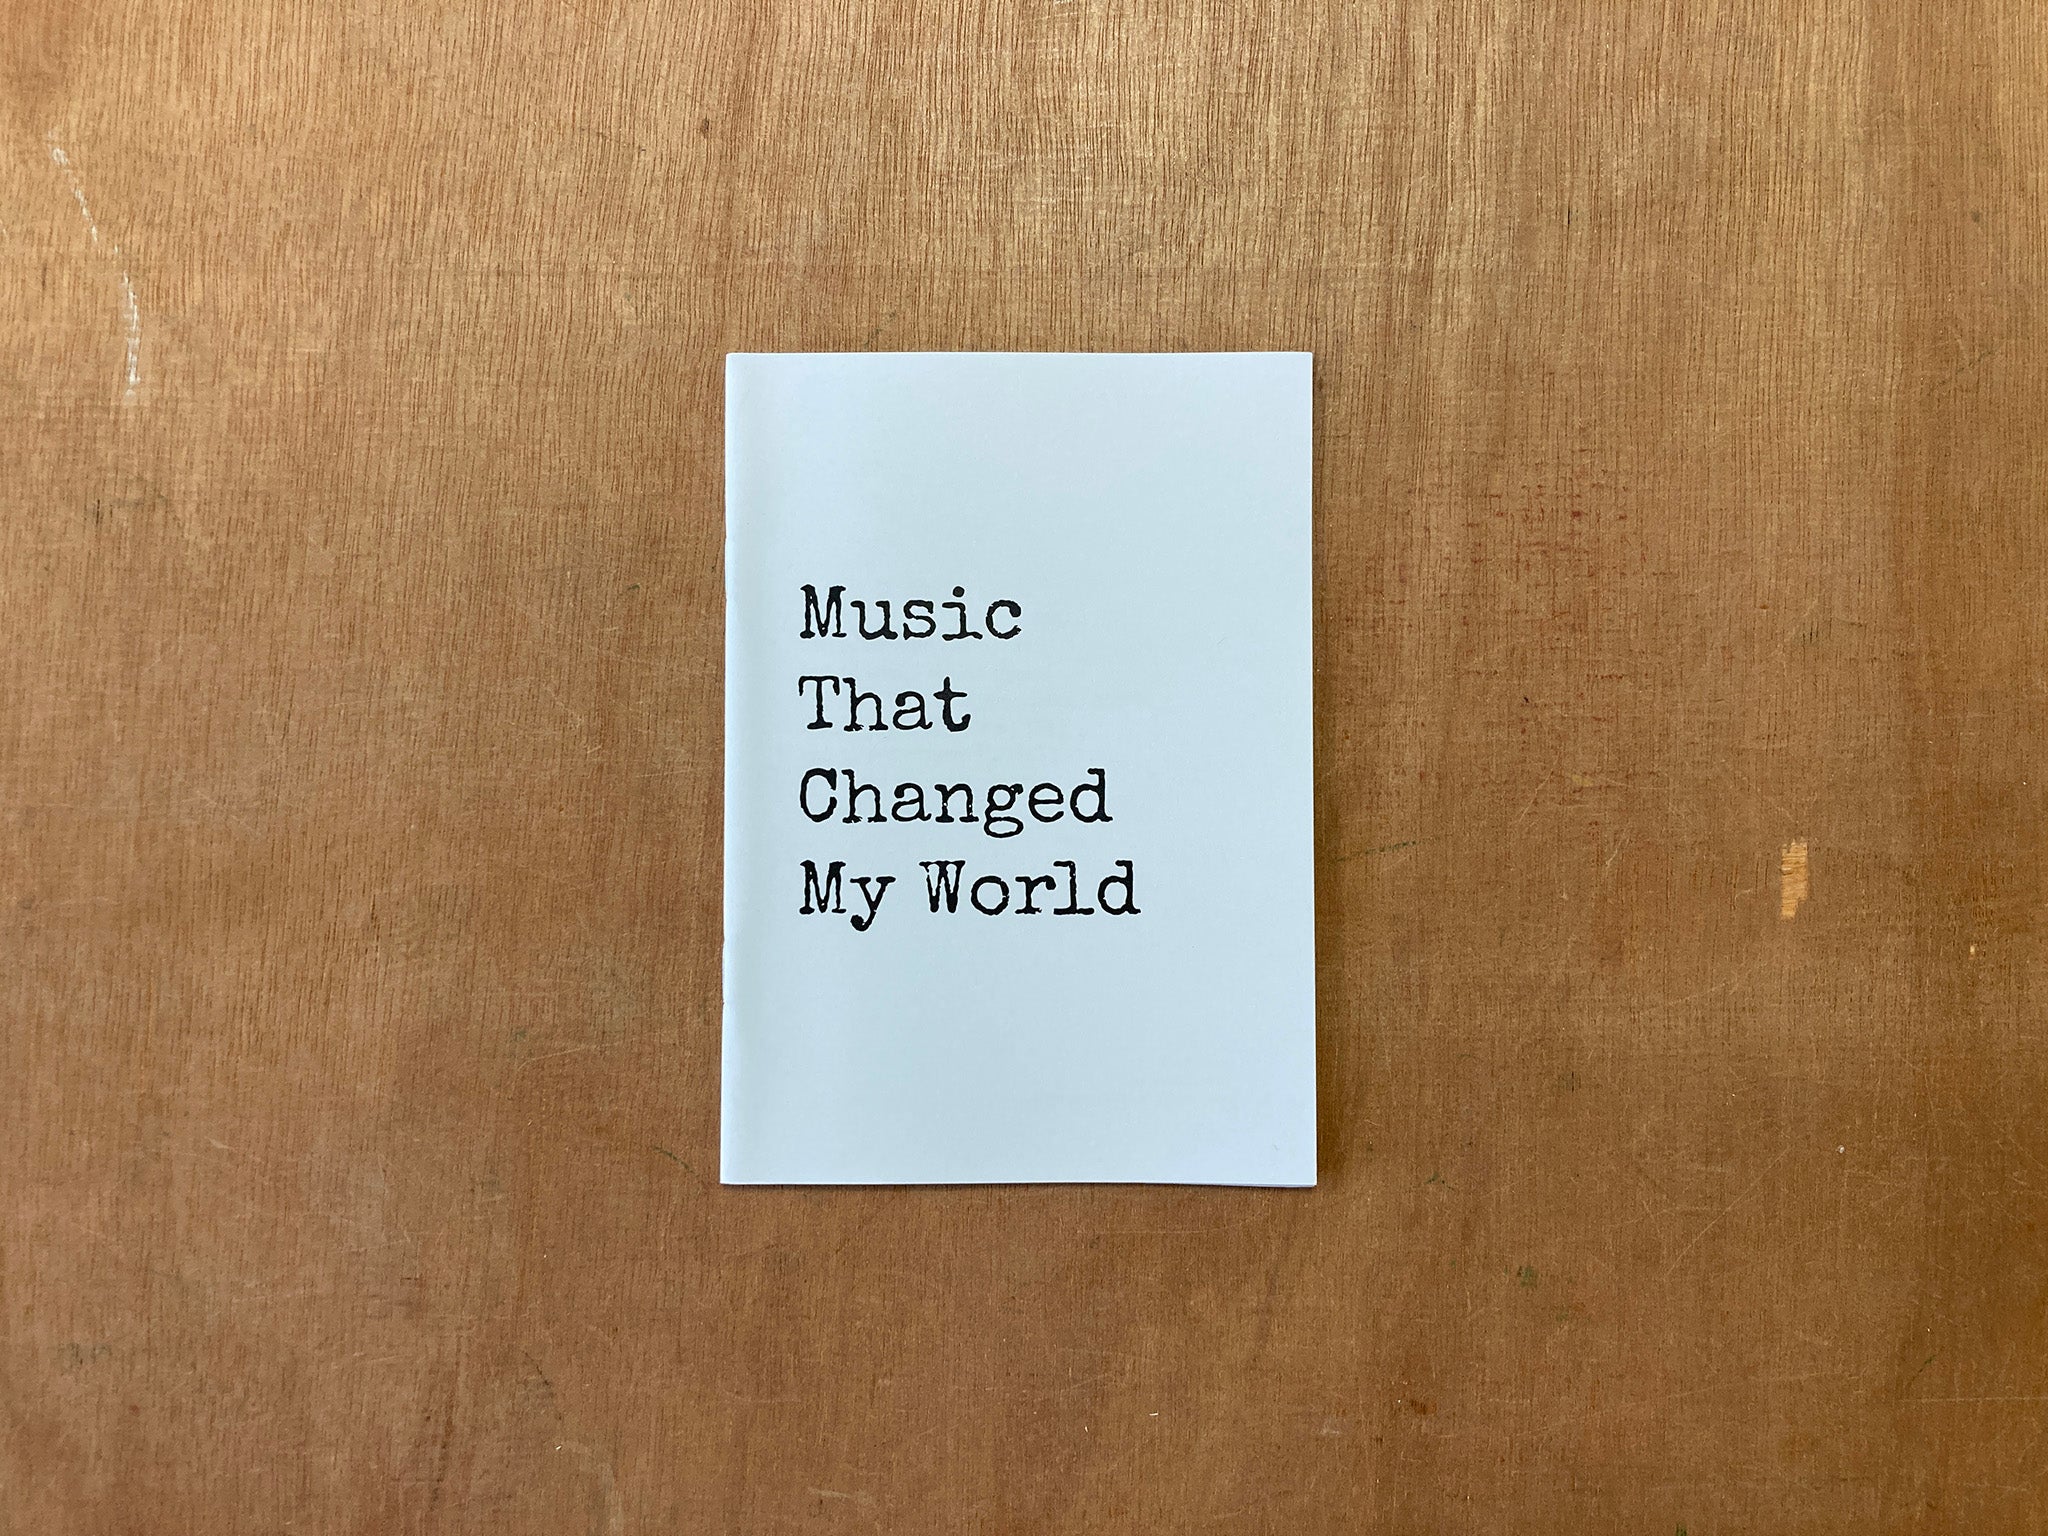 MUSIC THAT CHANGED MY WORLD by Natasha Natarajan